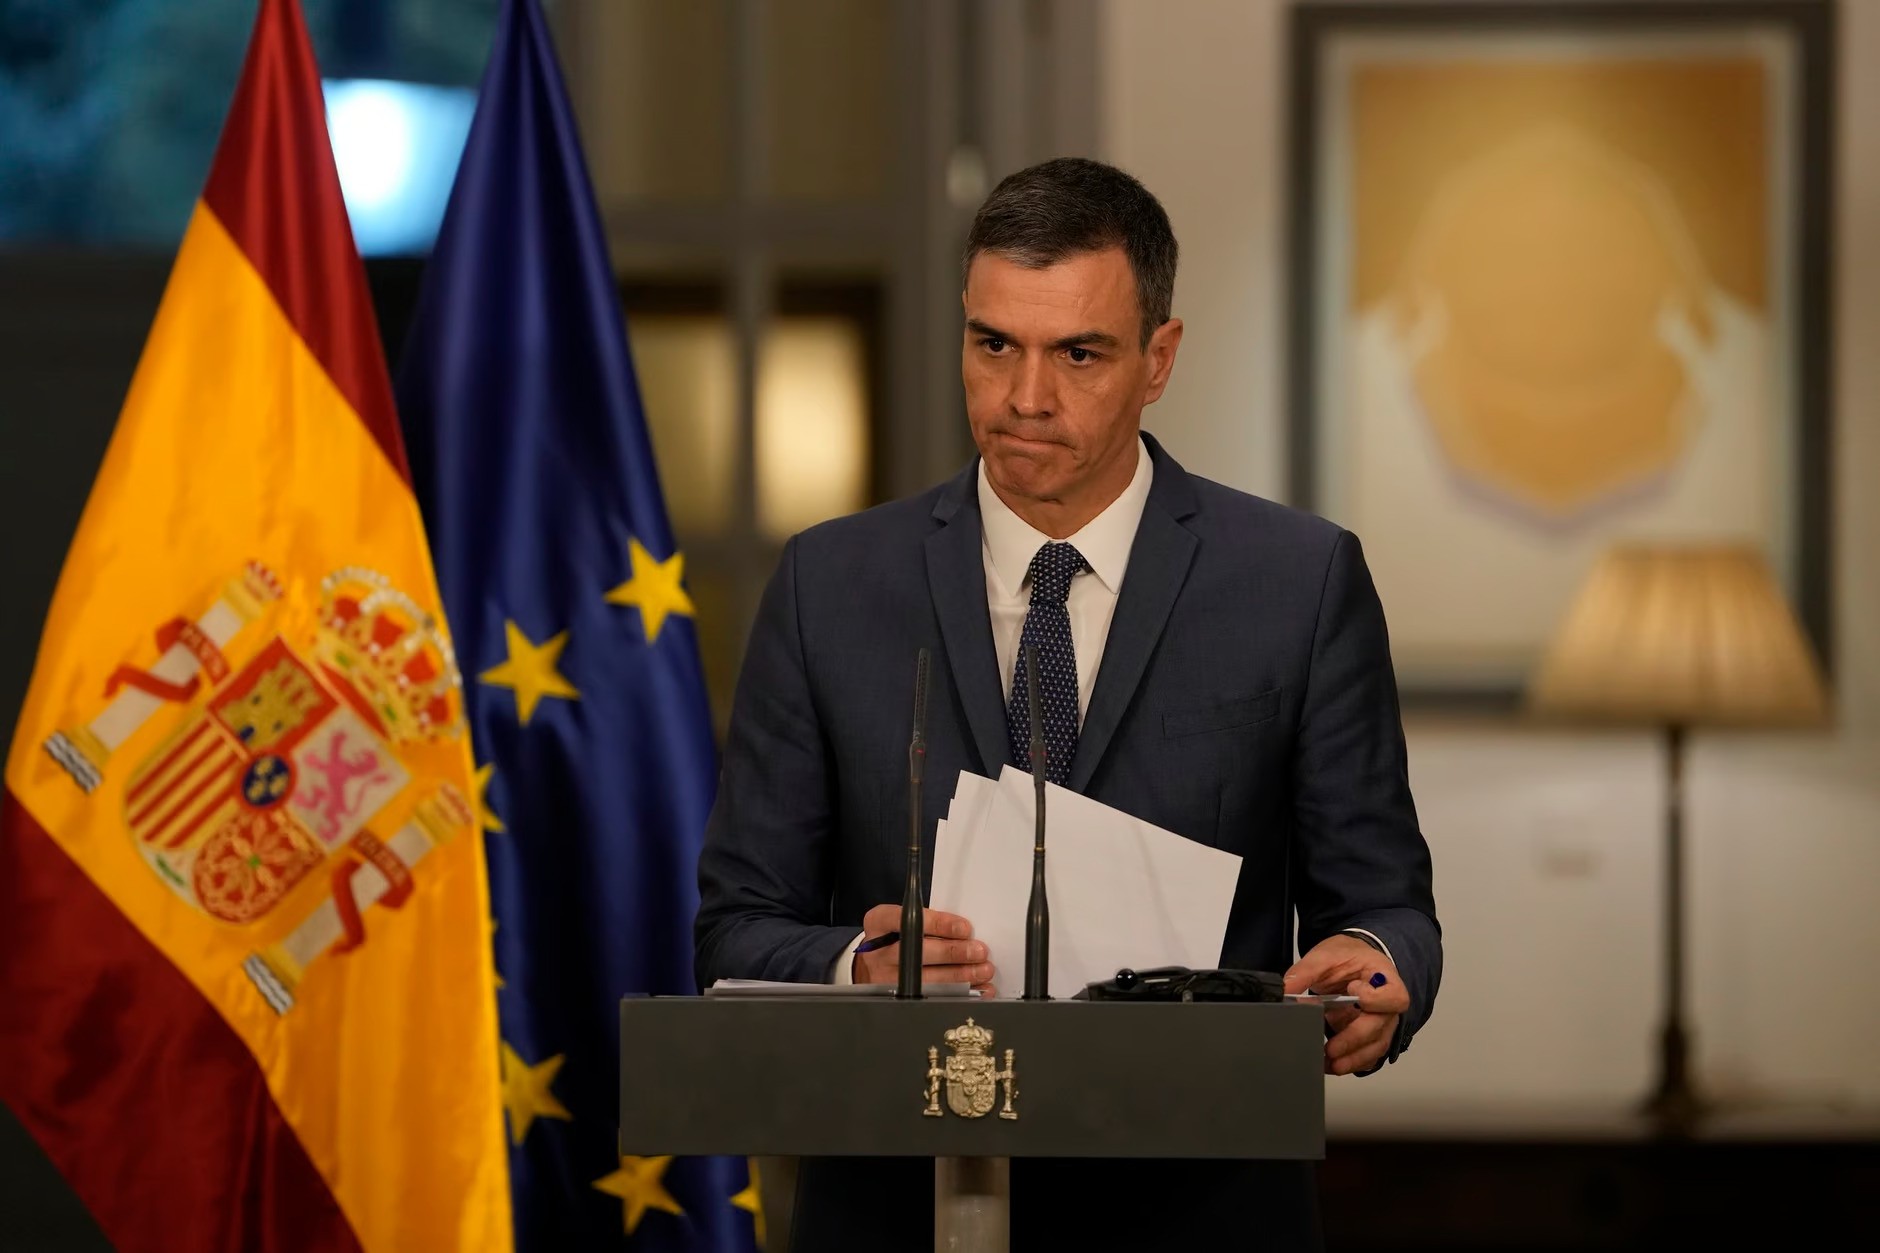 Kryeministri spanjoll nuk tërhiqet/Sanchez: Do të vazhdoj drejtimin e qeverisë!